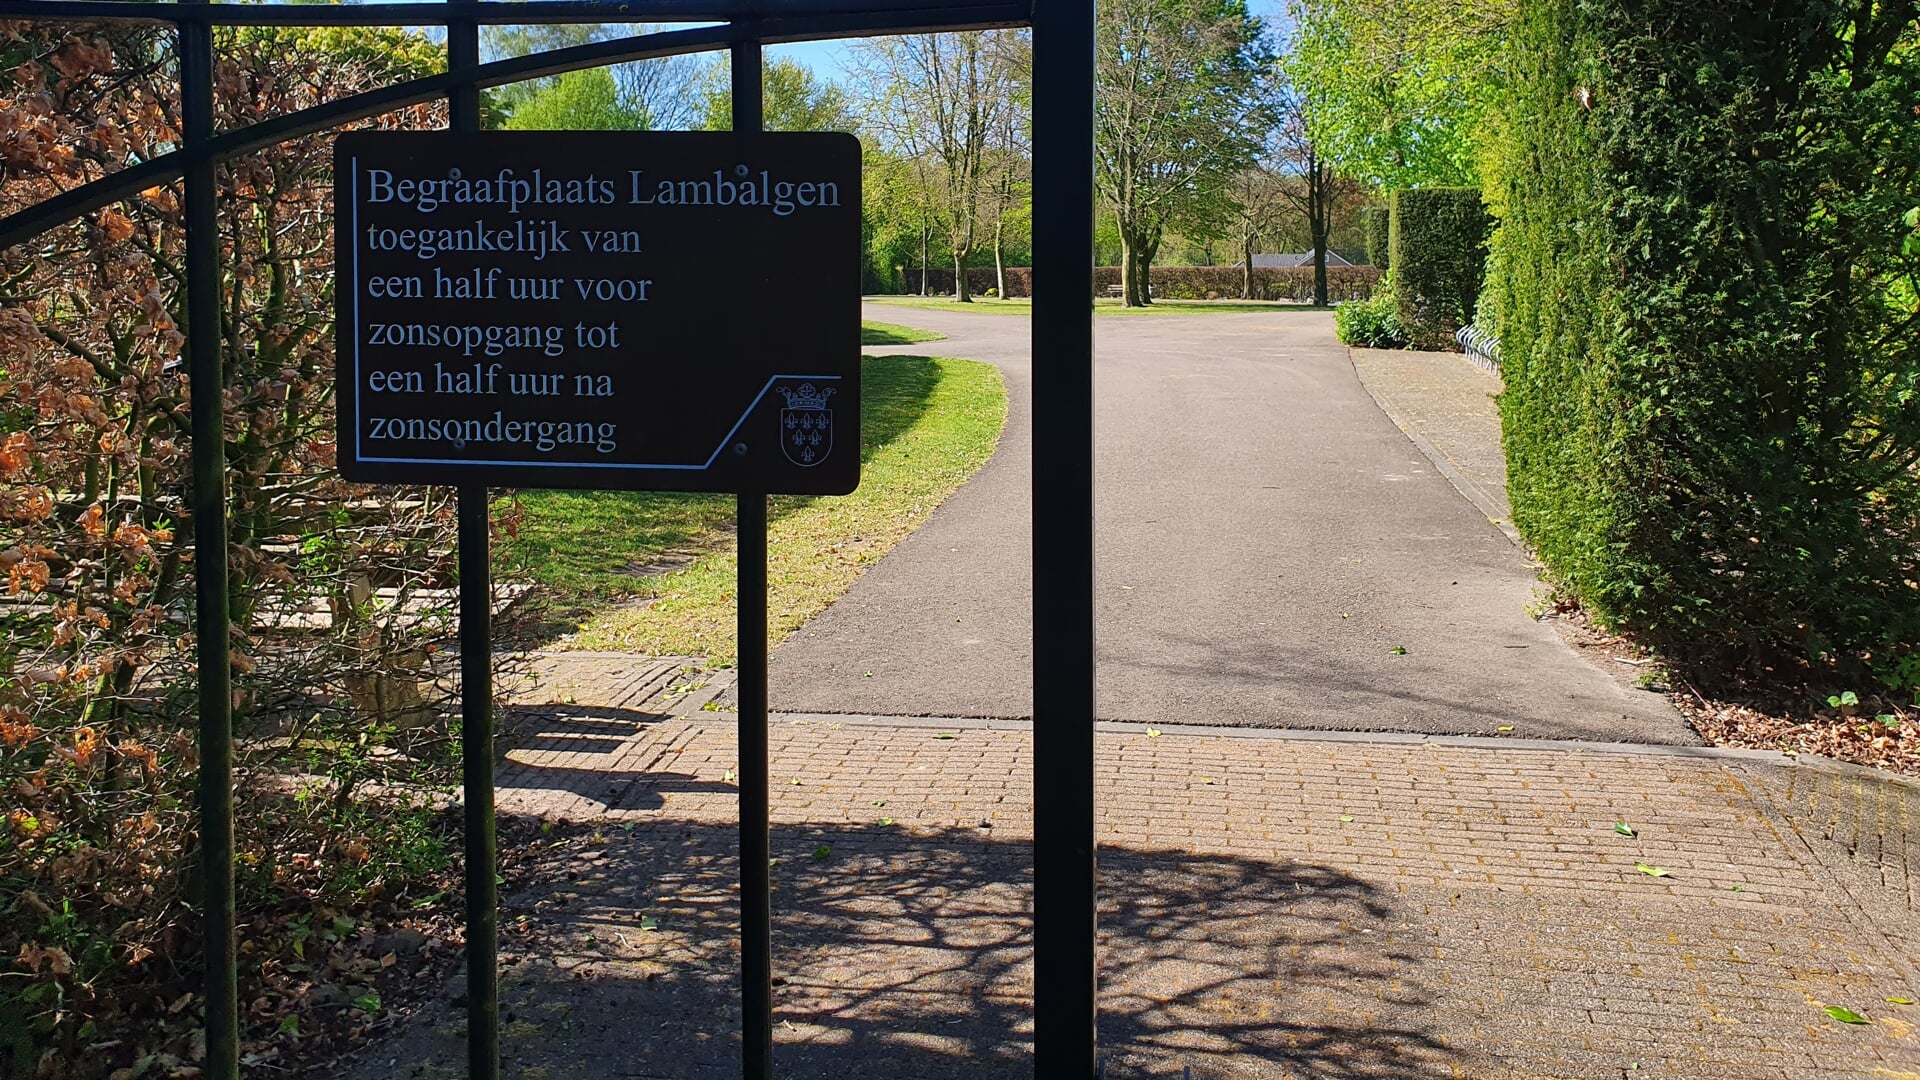 Begraafplaats Lambalgen. 